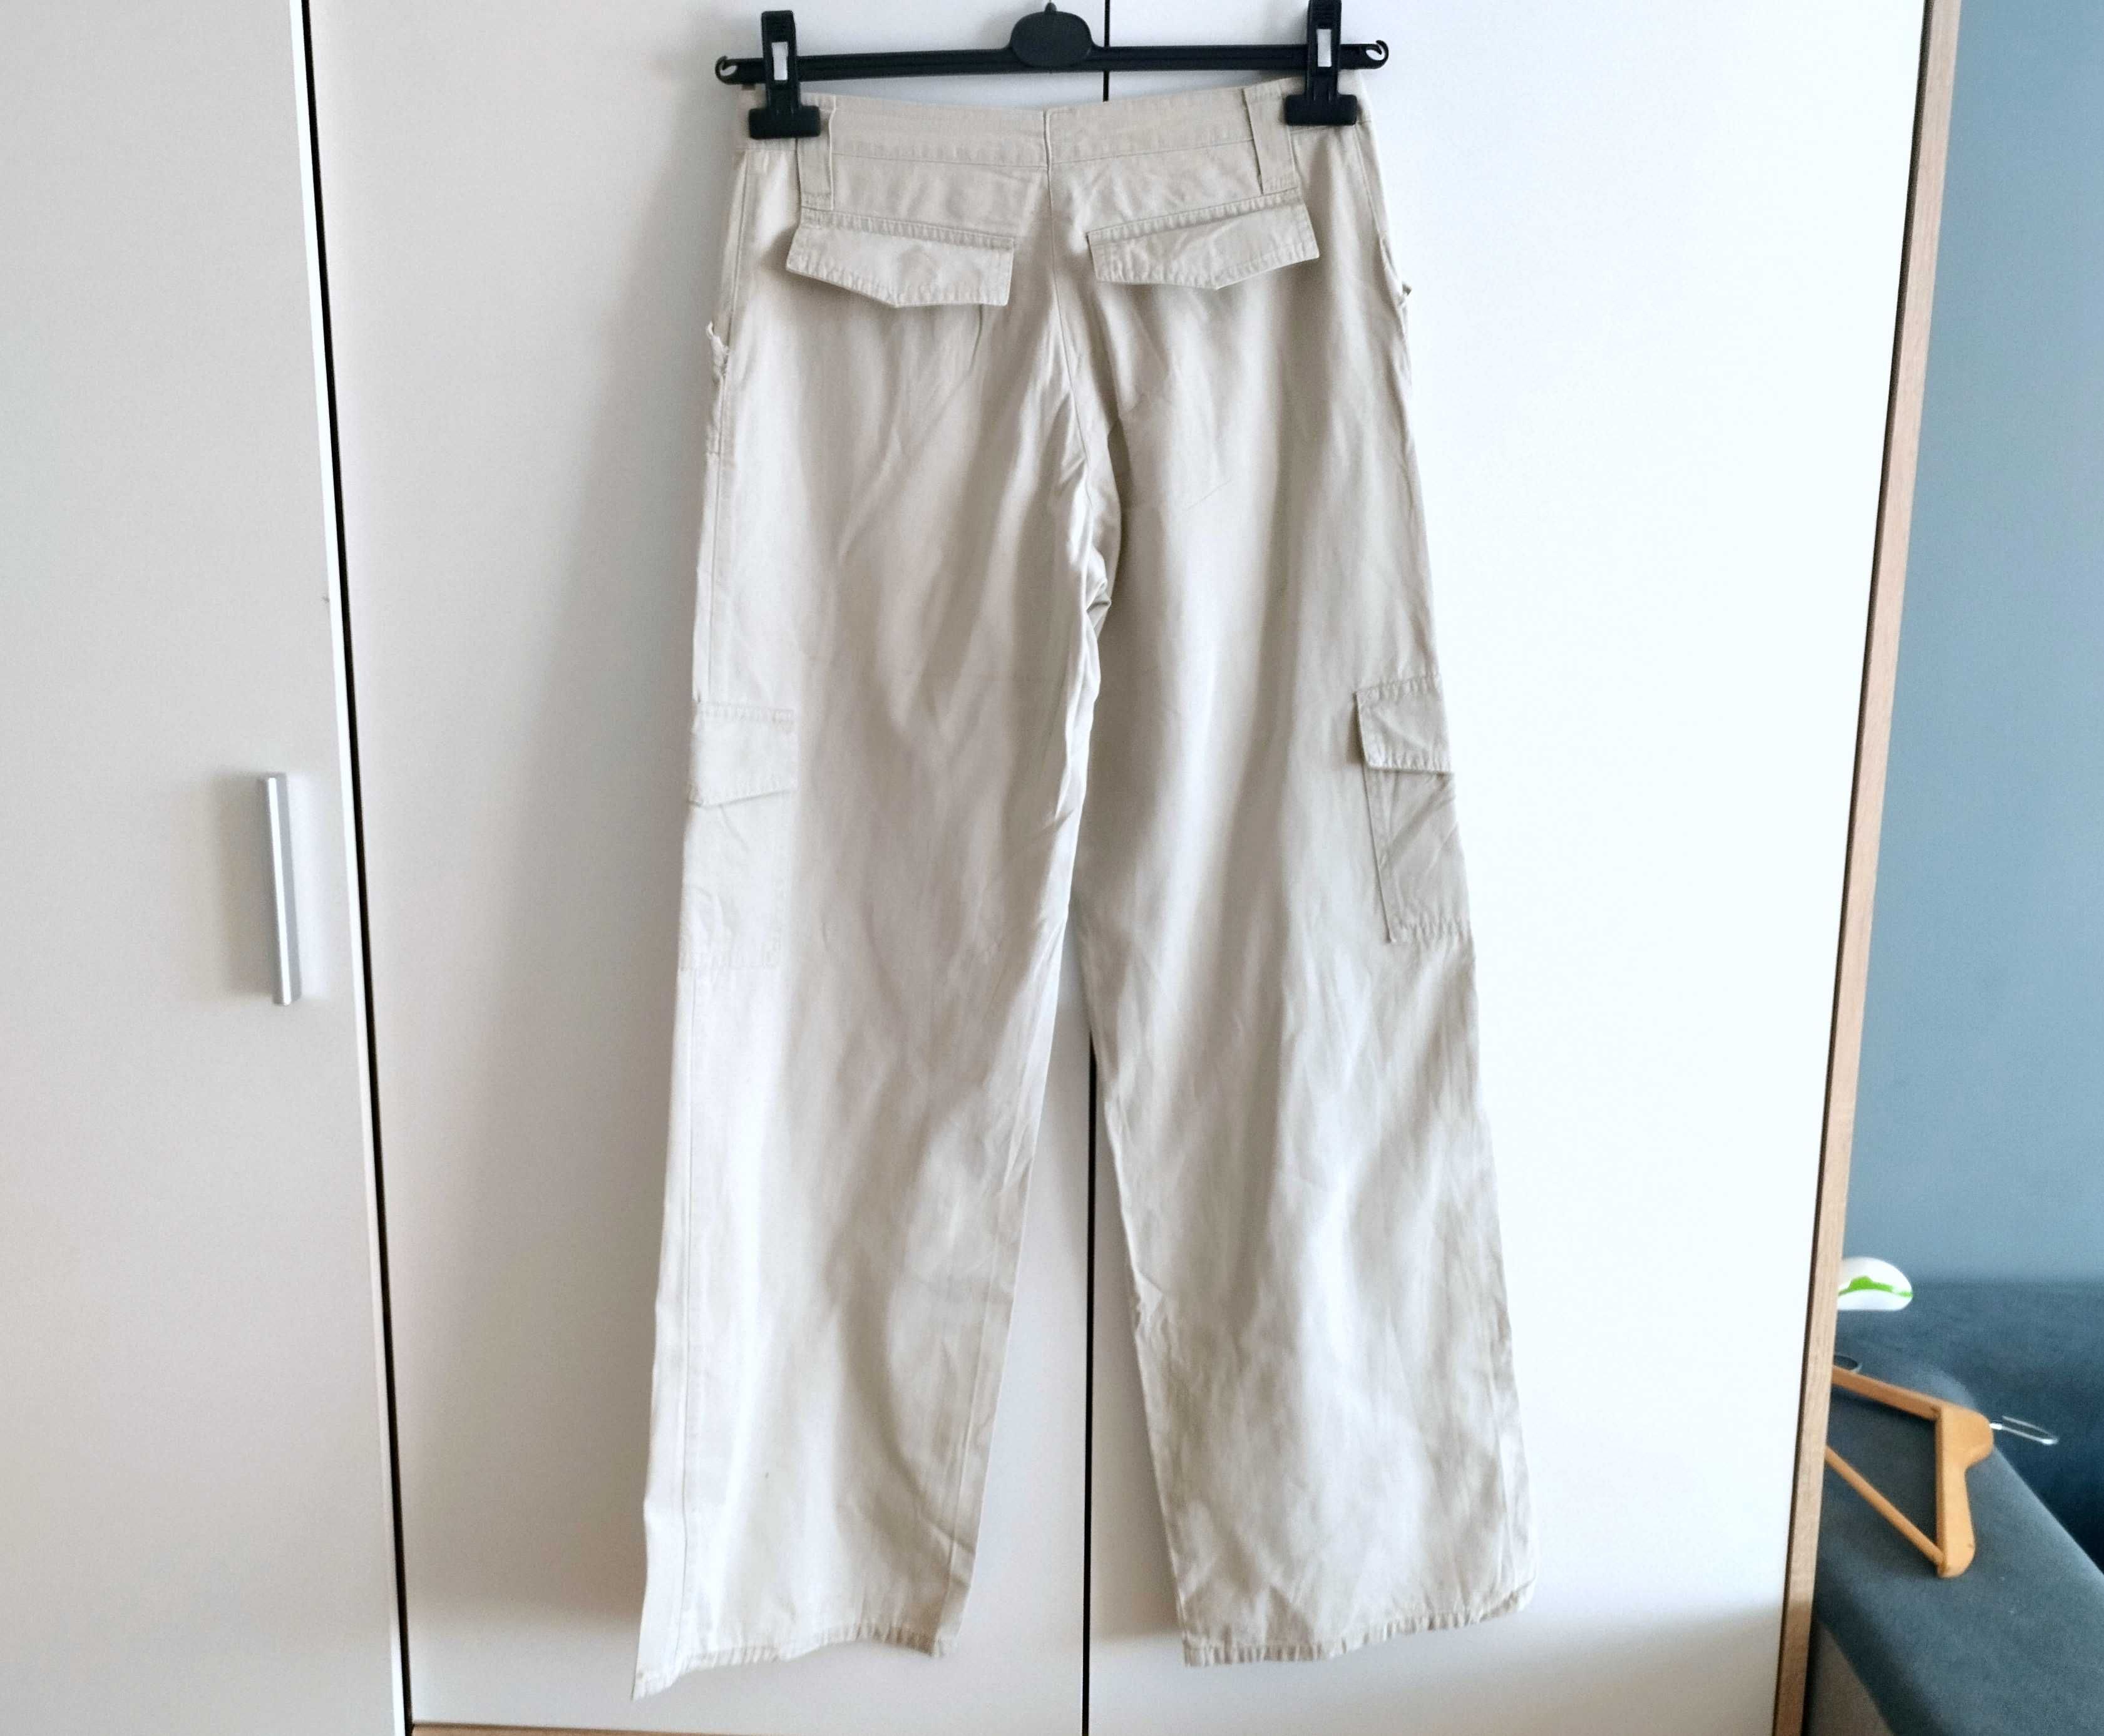 Spodnie damskie biało-kremowe rozmiar 36 bojówki